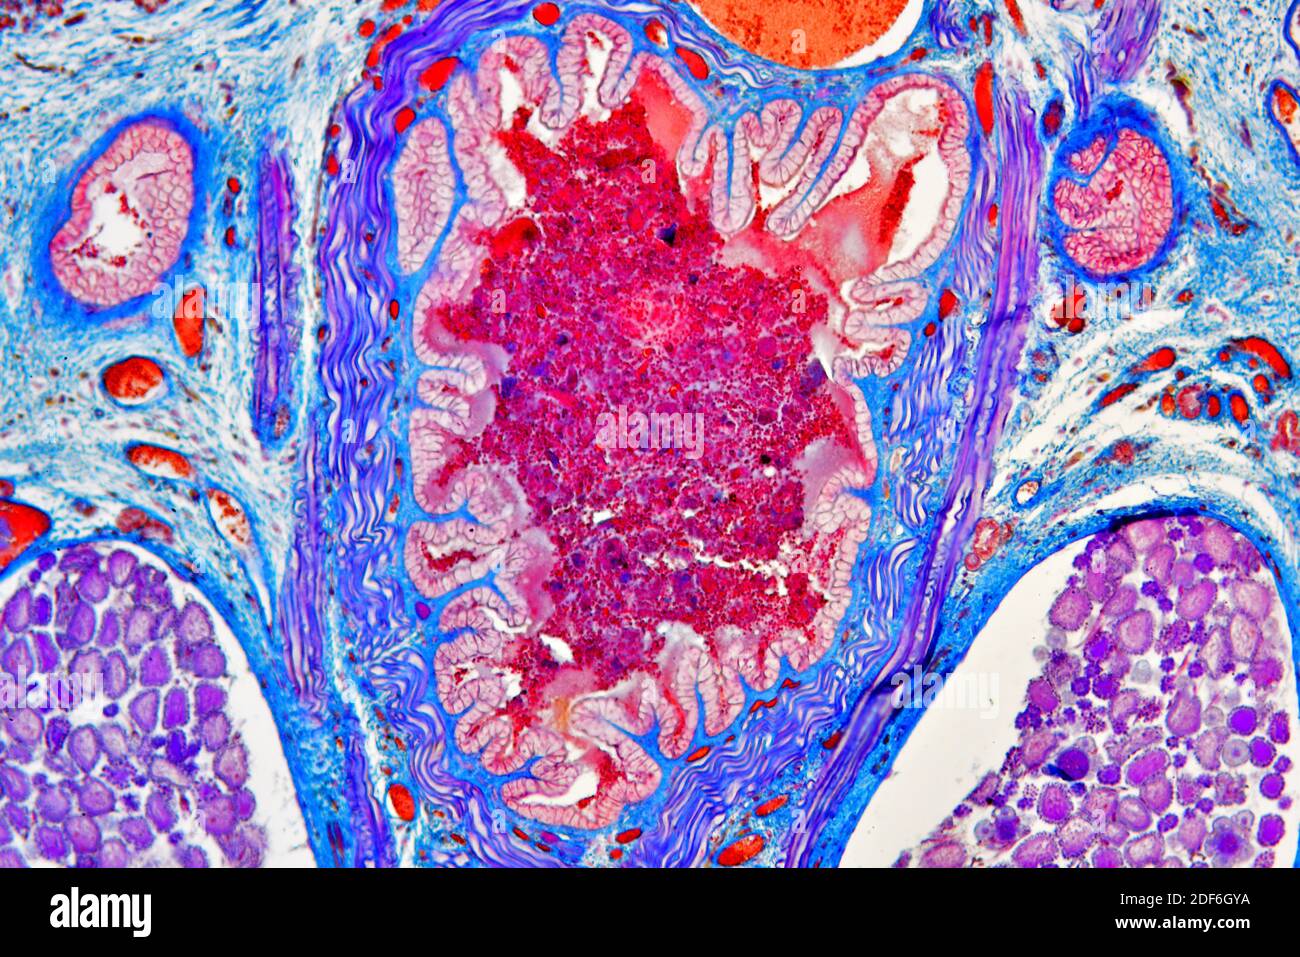 Sezione trasversale della leech medicinale europea (Hirudo medicinalis) che mostra utero, intestino e diverticolo del raccolto. Microscopio ottico X100. Foto Stock